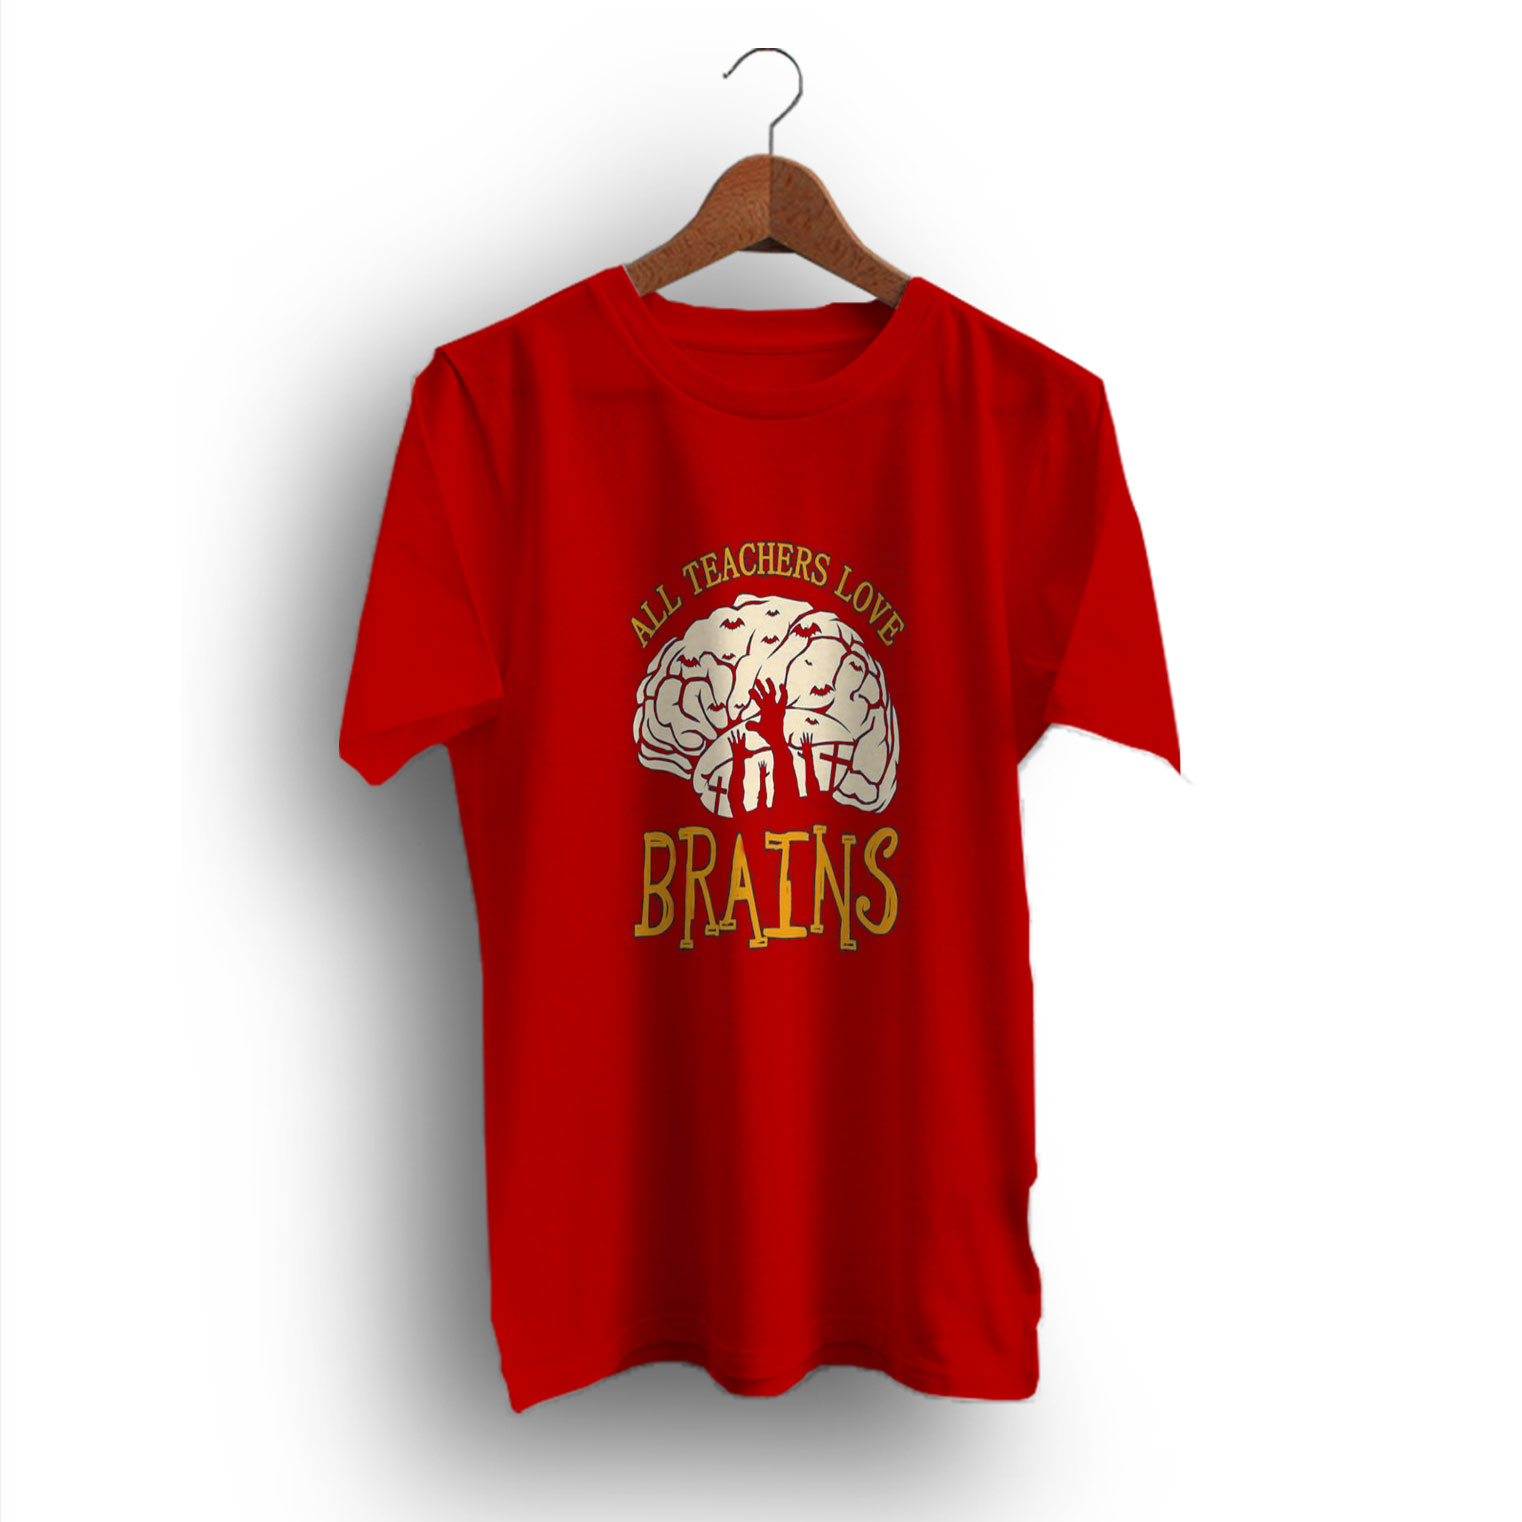 Saying All Teachers Brains Halloween T-Shirt - Ideas Shirt - Inspired Shirt - Design Bigvero